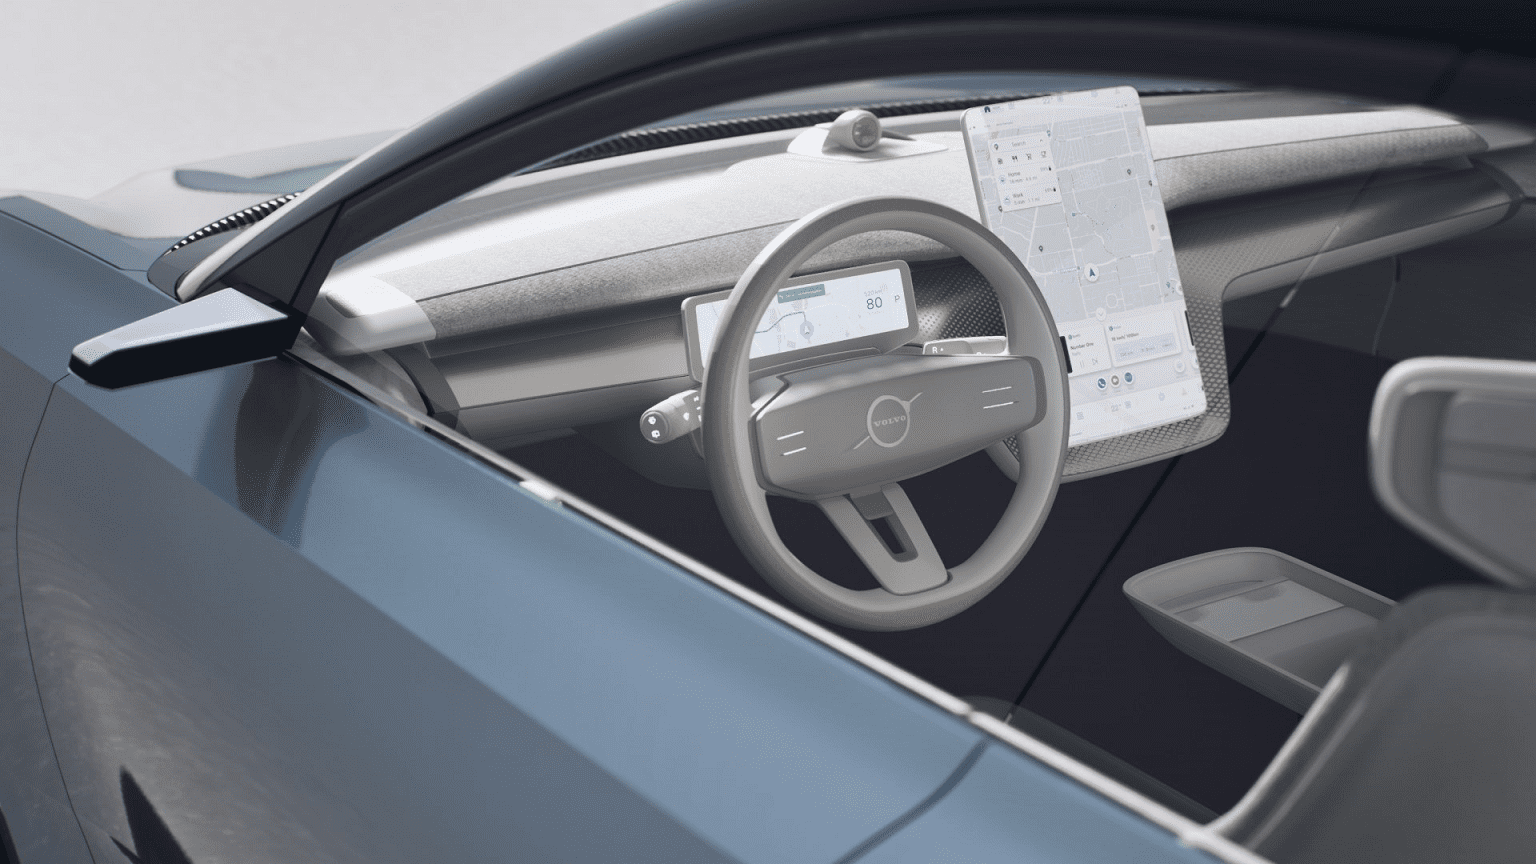 Volvo Cars indgår samarbejde med Fortnite-udvikleren Epic Games om fremtidens skærmoplevelse